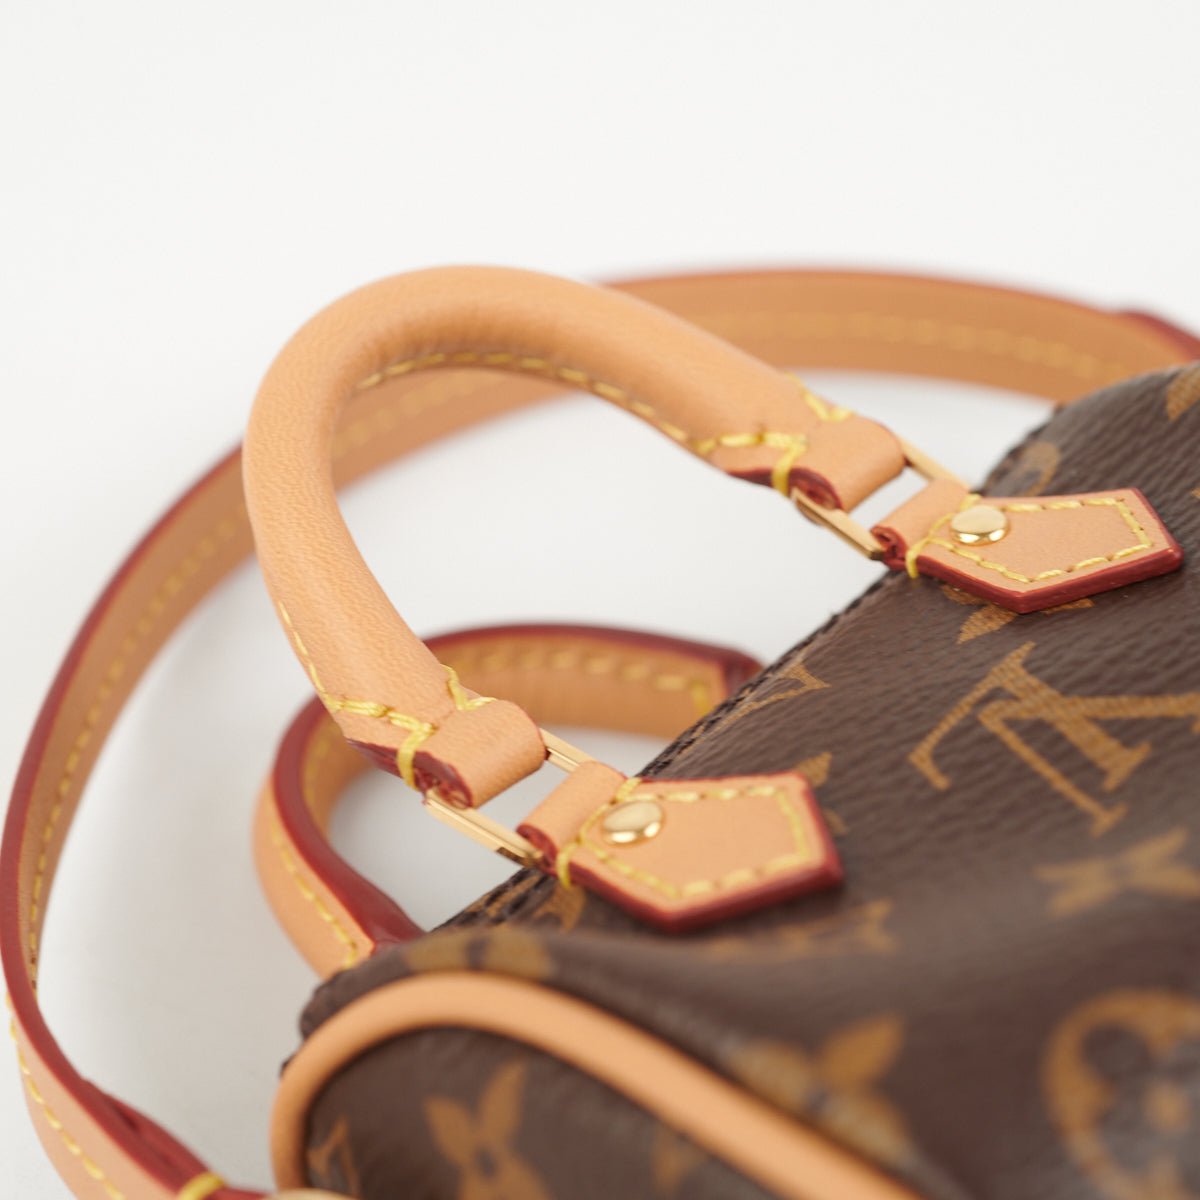 How cute is this Micro Speedy bag charm 😂 : r/Louisvuitton